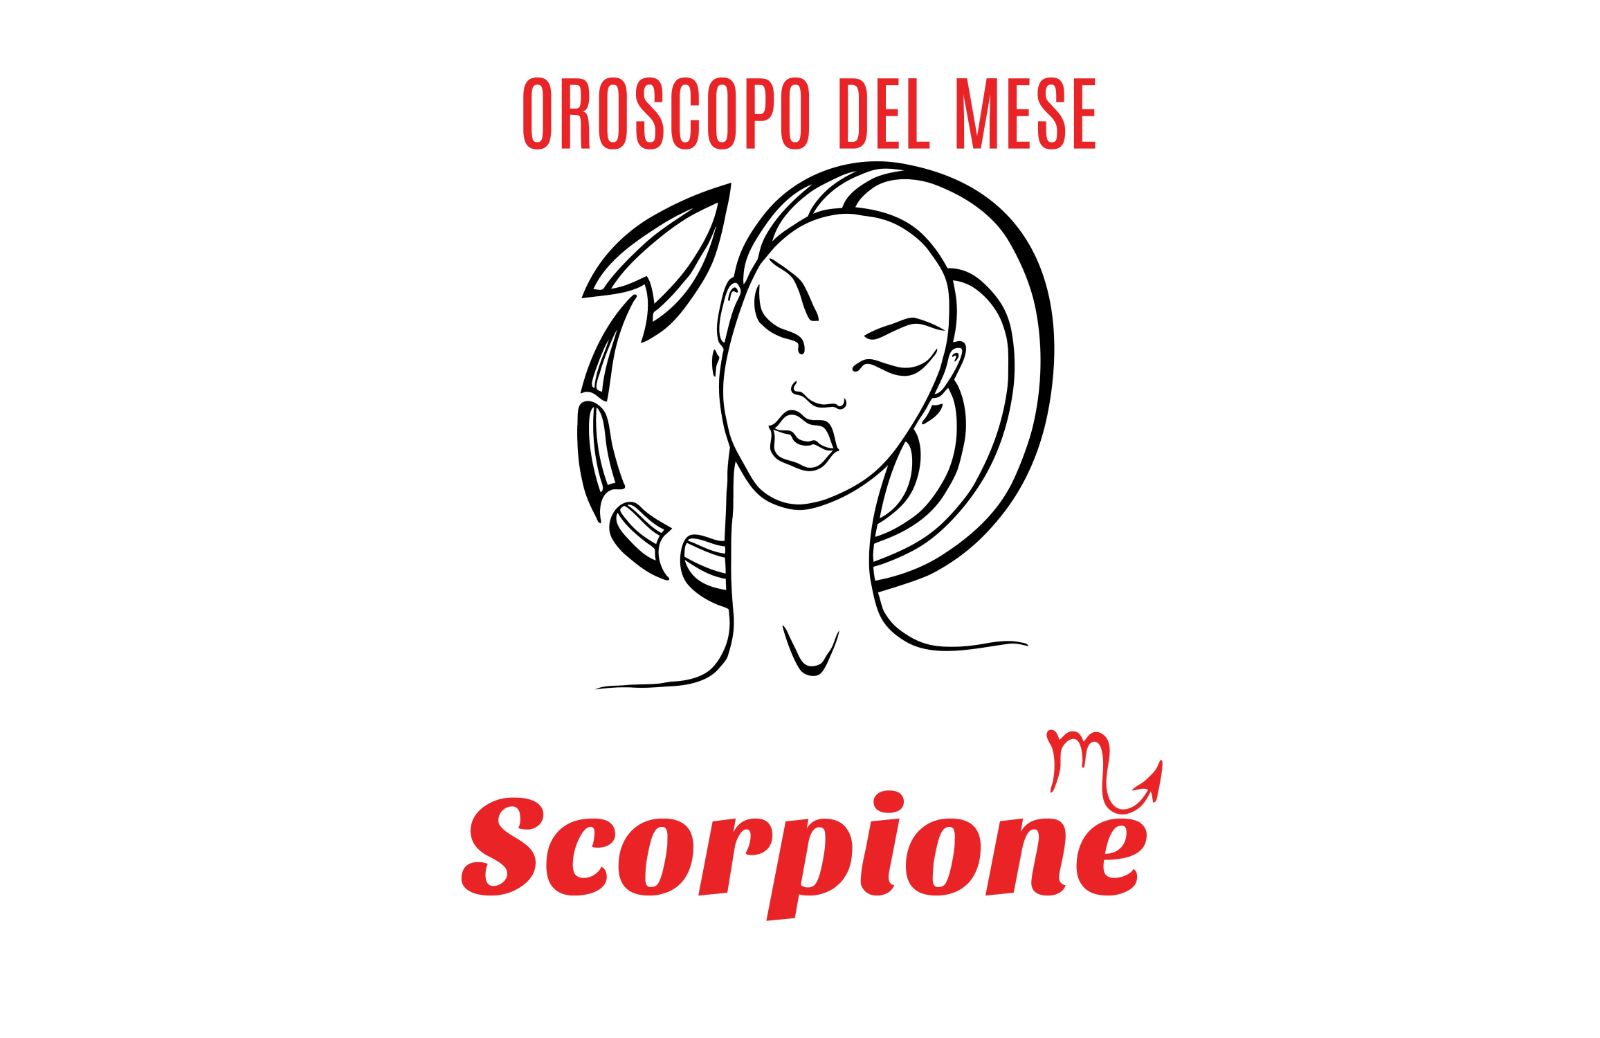 Oroscopo del mese: Scorpione - aprile 2020